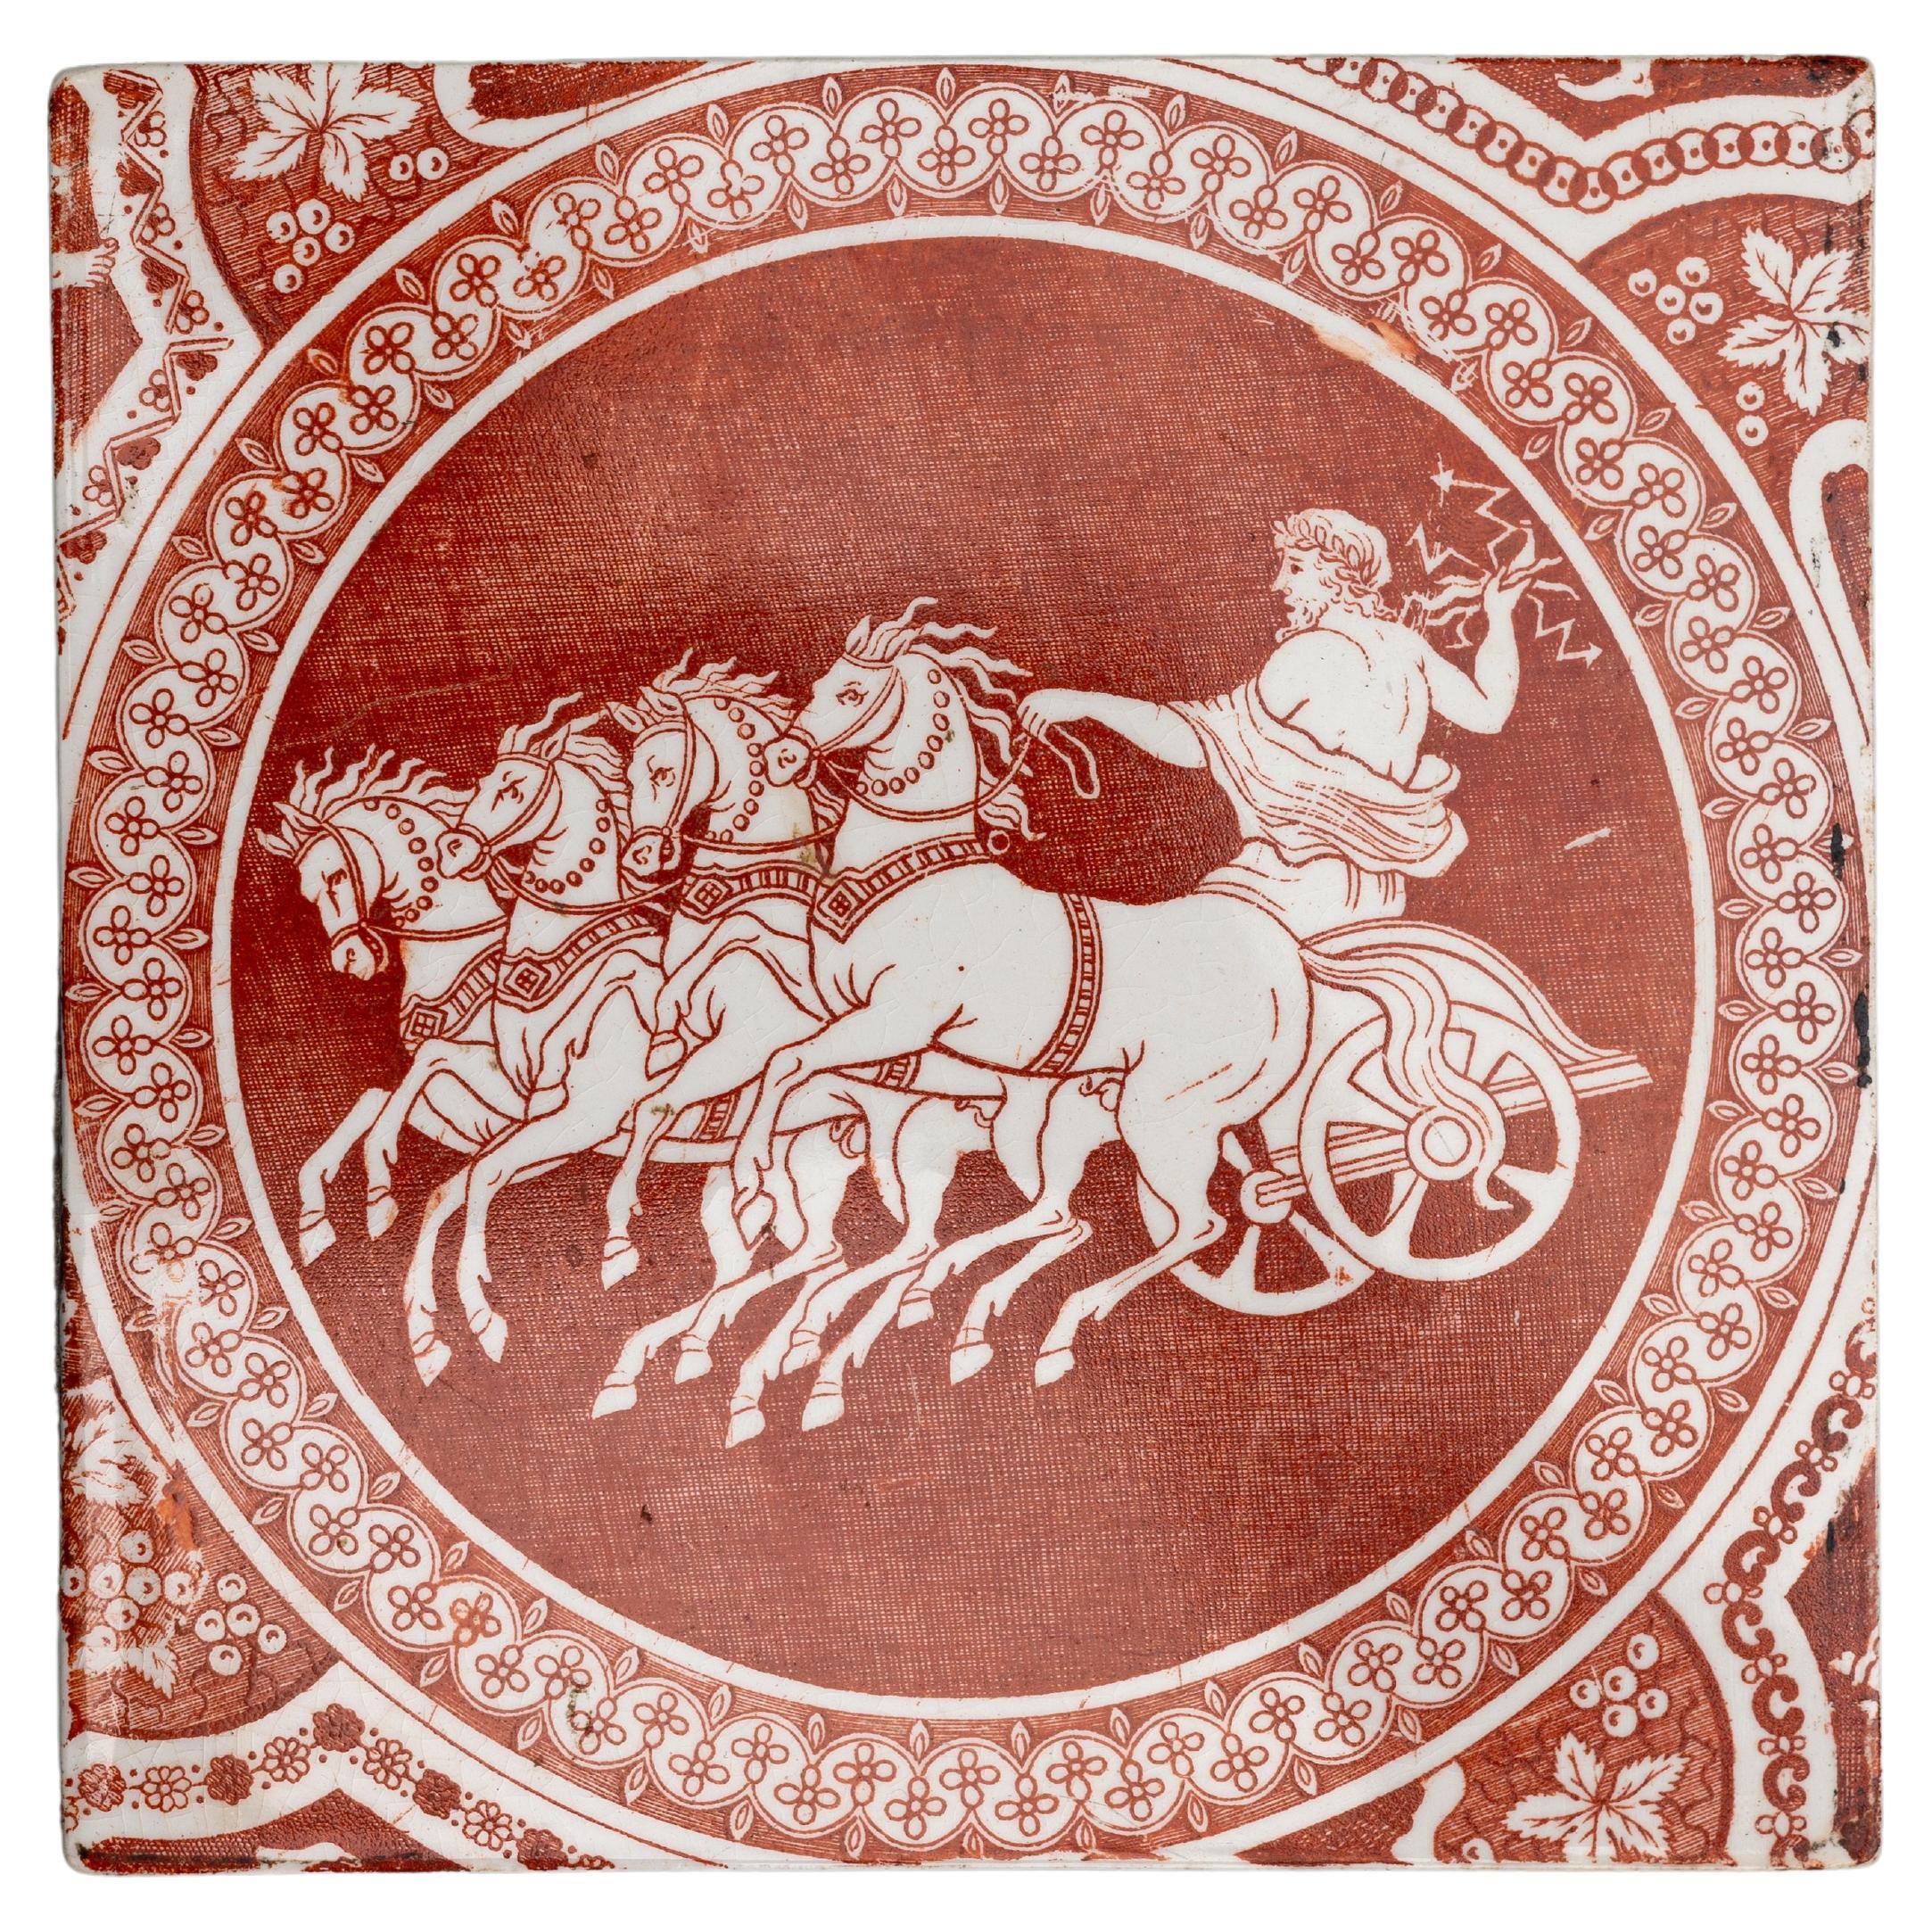 Frühes 19. Jahrhundert Spode Rote Fliese mit griechischem Muster